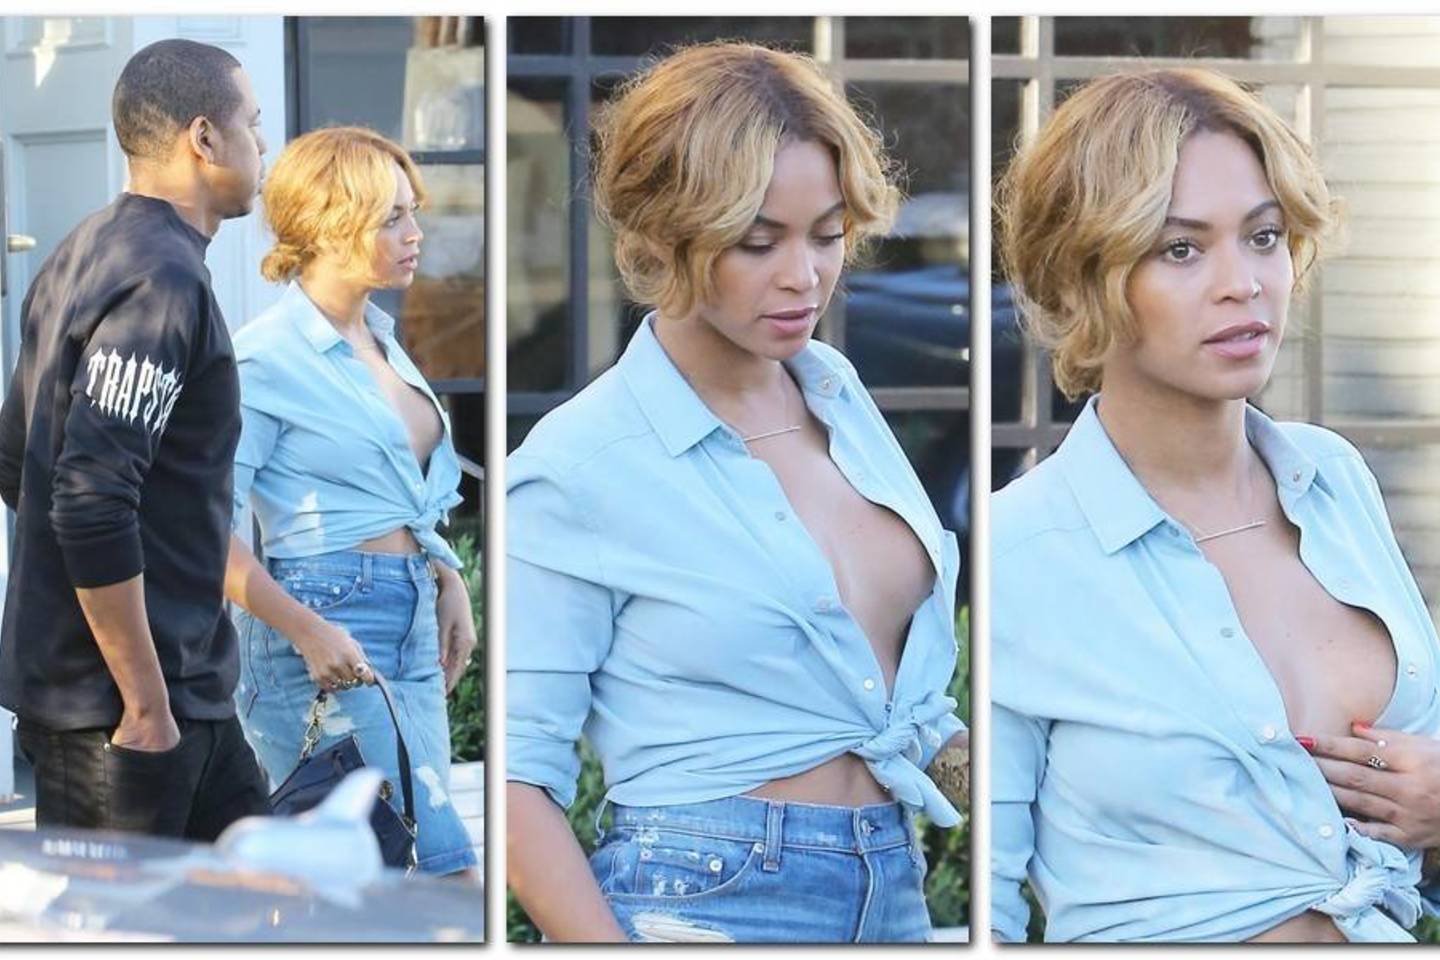 Pro itin atvirus marškinius kone išsprūdo atlikėjos Beyonce krūtys.<br>„ViDA Press“ nuotr.